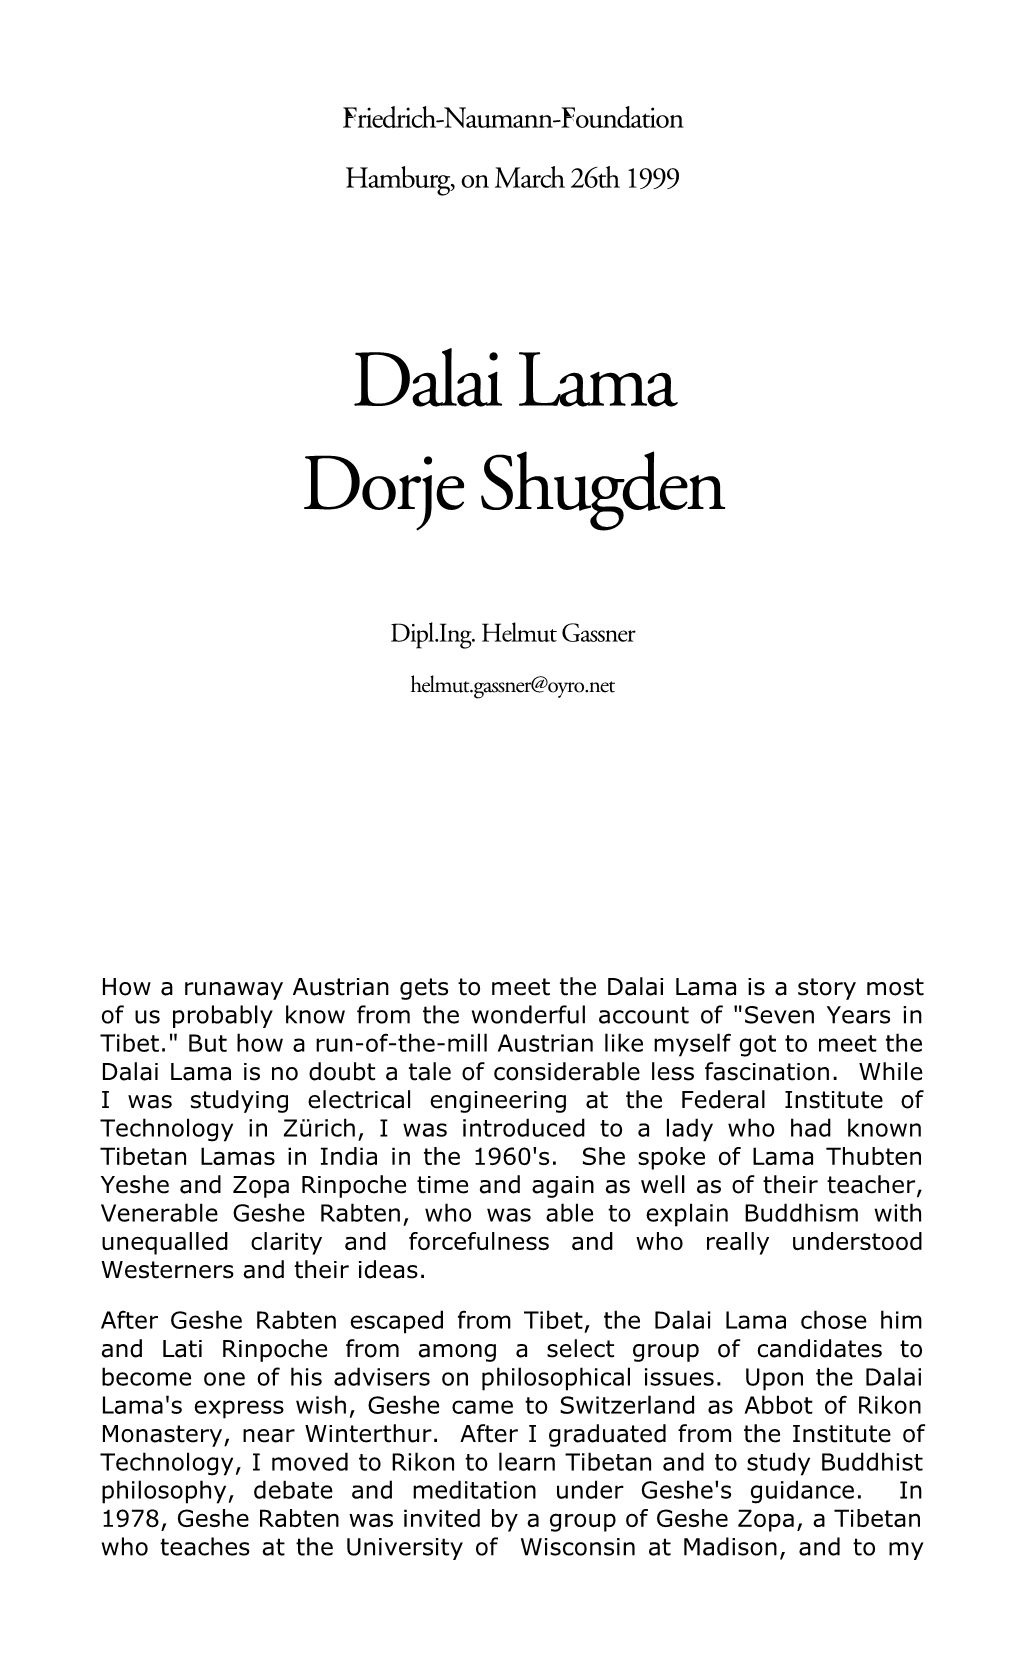 Dalai Lama Dorje Shugden